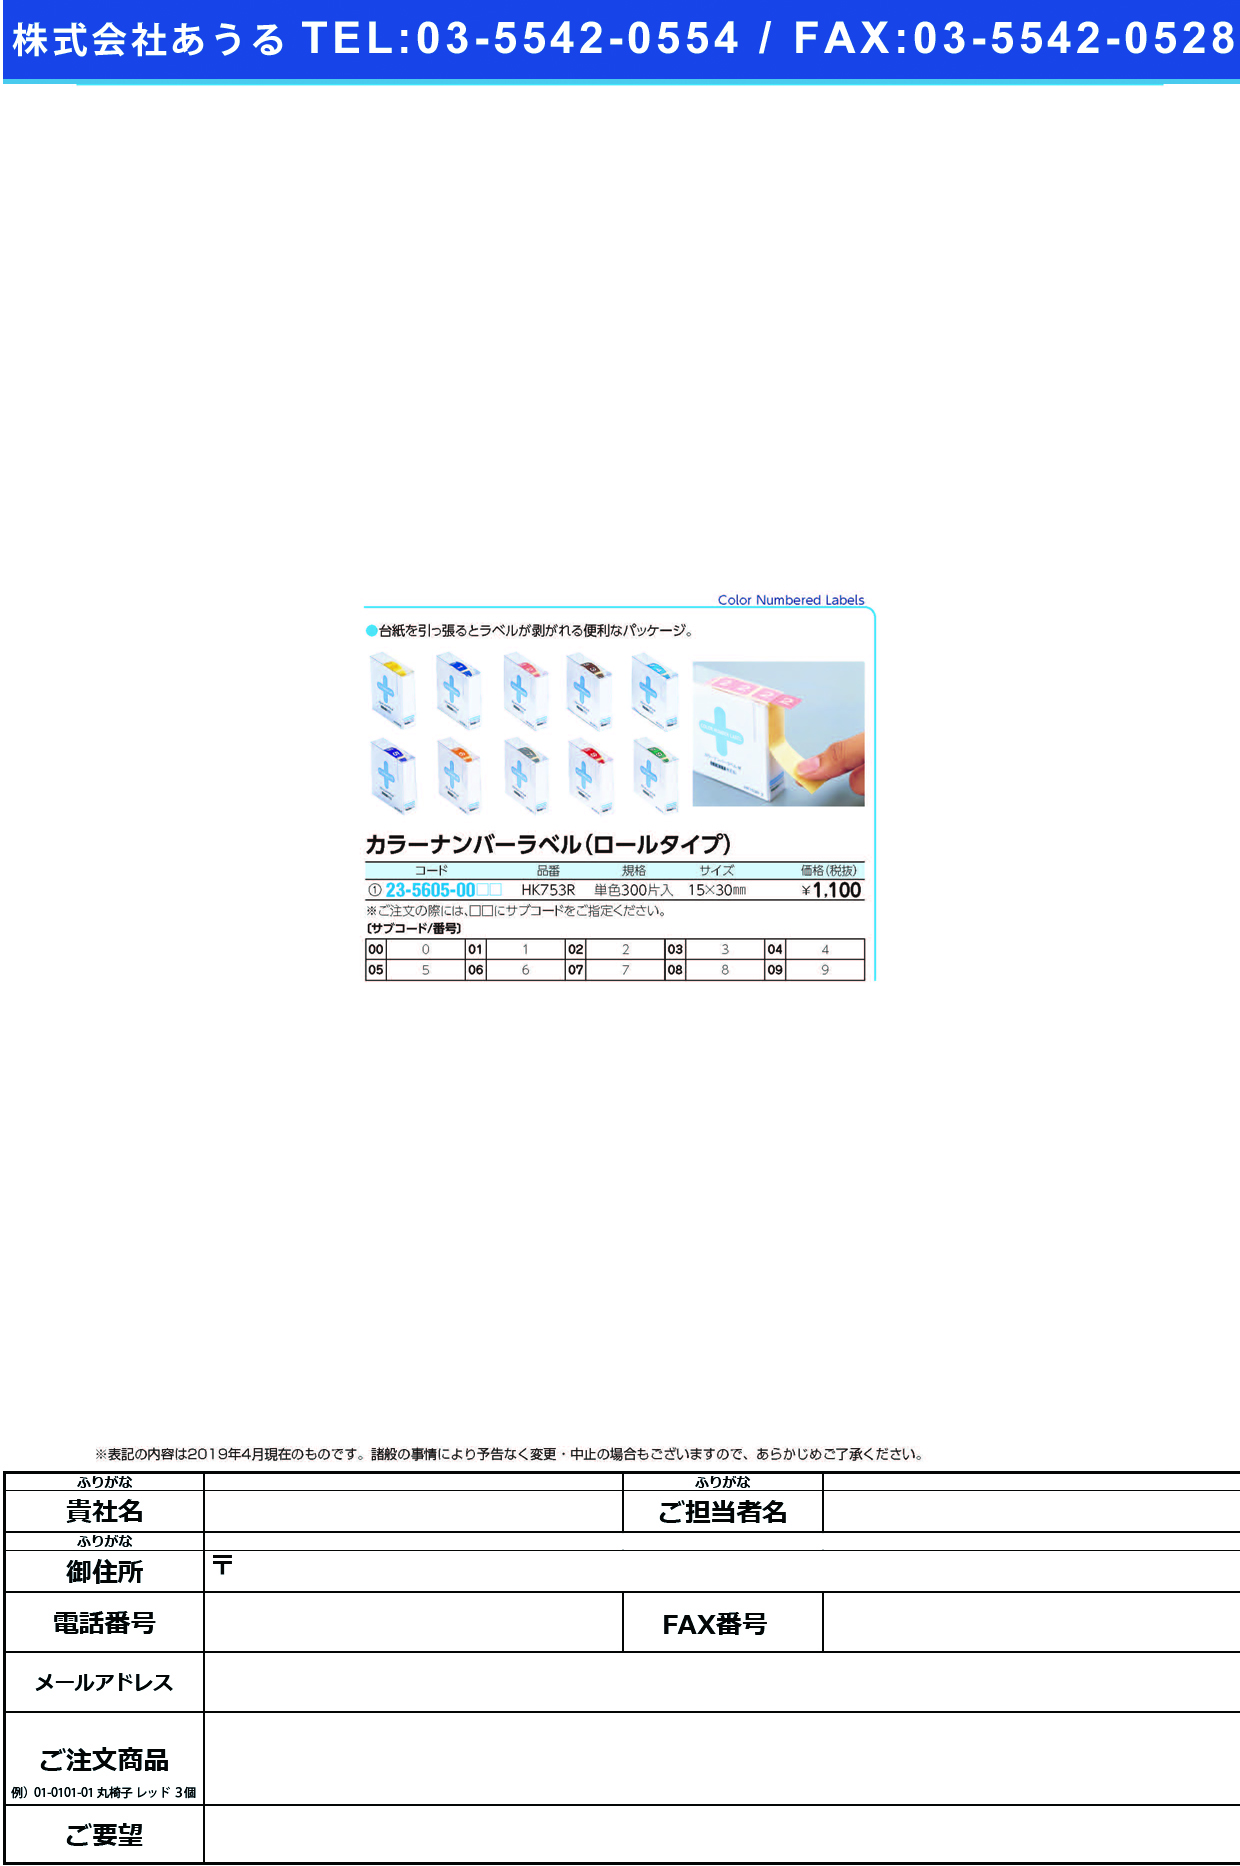 (23-5605-00)カラーナンバーラベル（Ｍ）ロール HK753R(ﾀﾝﾊﾞﾝ)300ﾍﾝｲﾘ ｶﾗｰﾅﾝﾊﾞｰﾗﾍﾞﾙMﾛｰﾙ ０(ＬＩＨＩＴＬＡＢ．)【1箱単位】【2019年カタログ商品】